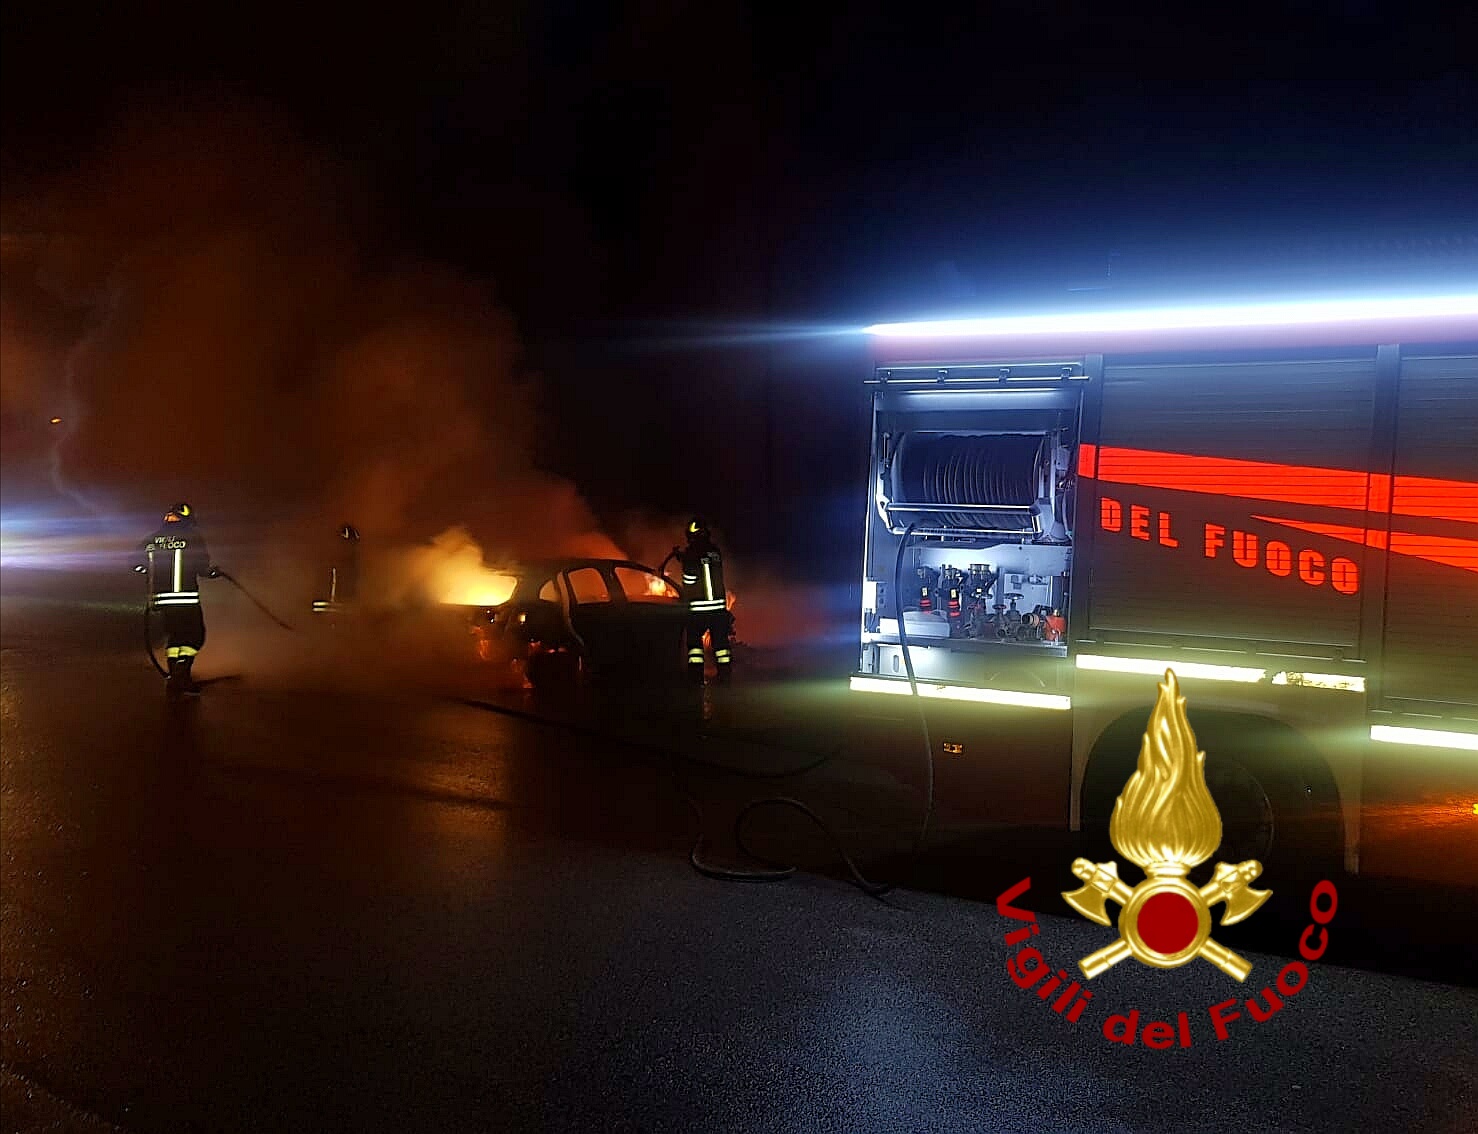 Atripalda| Auto in fiamme in via Salita Palazzo, intervengono i vigili del fuoco